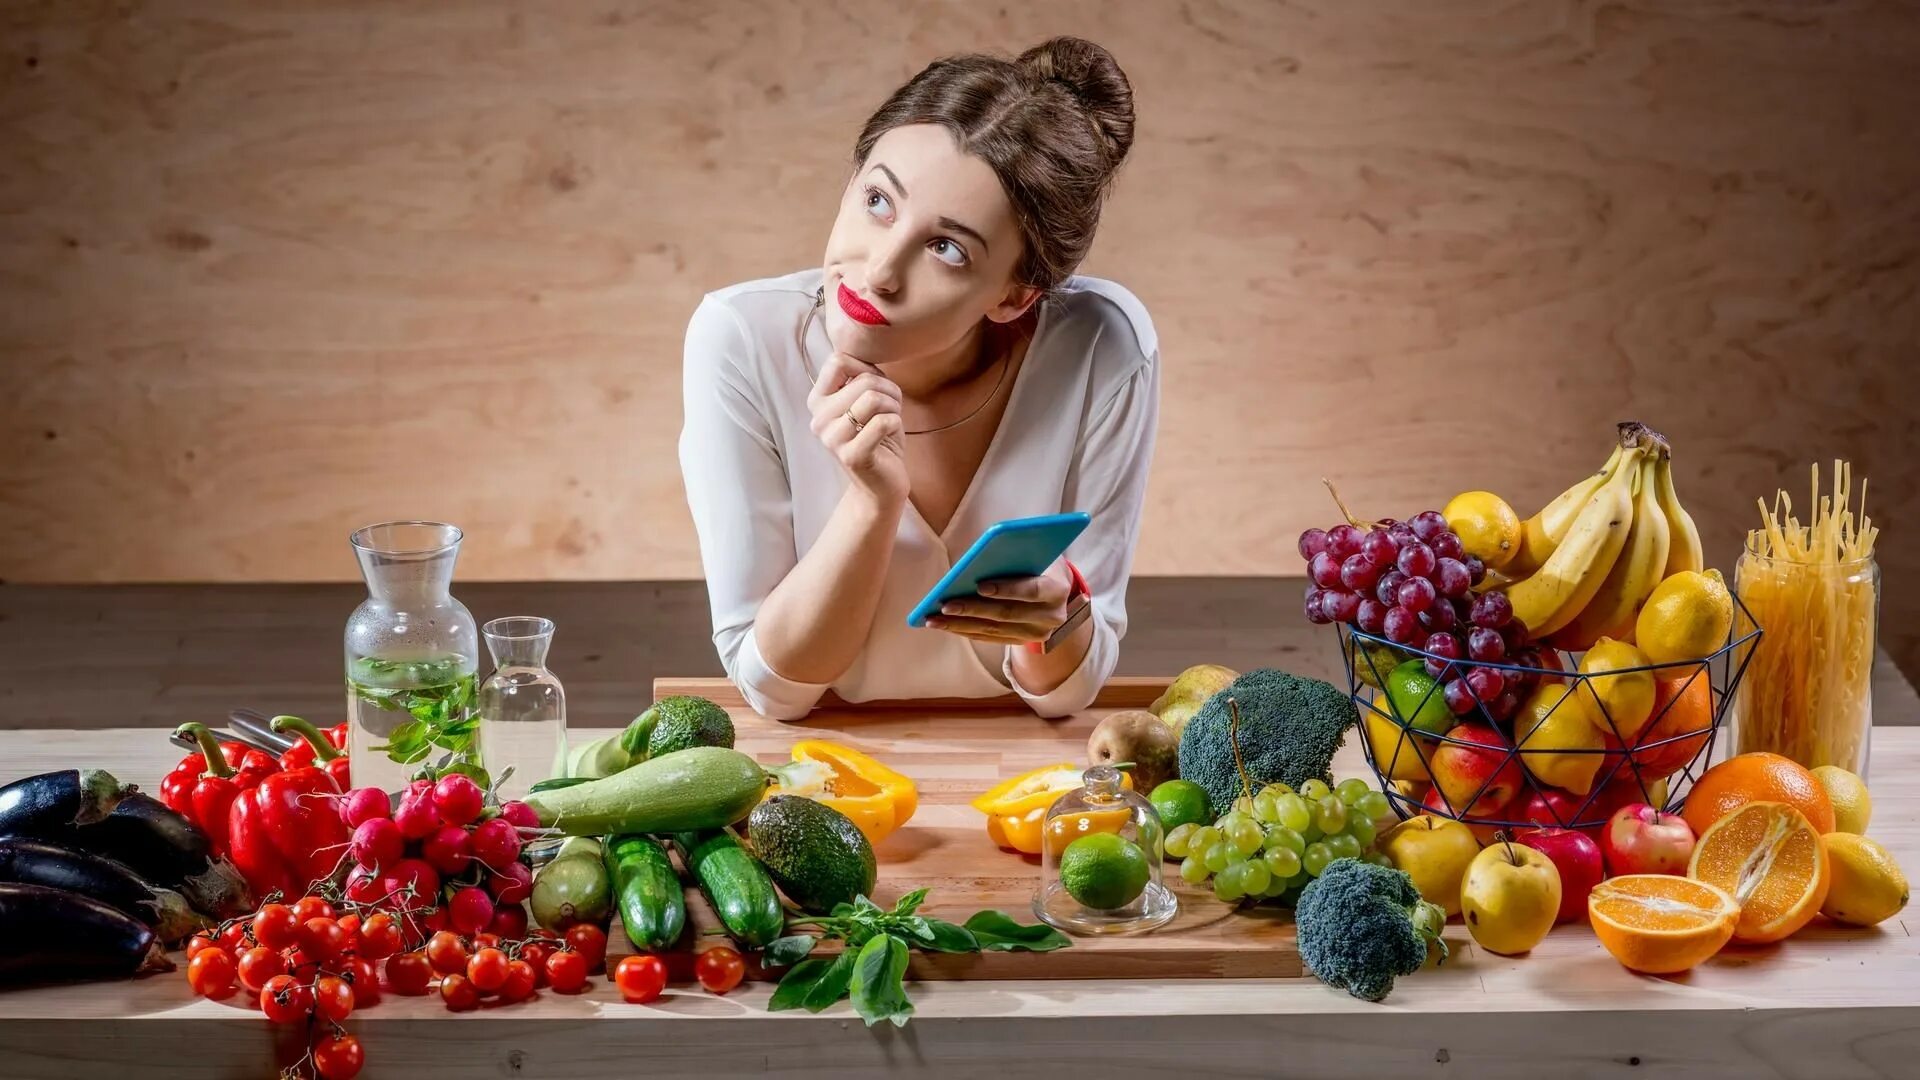 На ночь можно есть овощи. Здоровое питание девушка. Еда на женщине. Фотосессия с овощами и фруктами. Женщина ест овощи и фрукты.